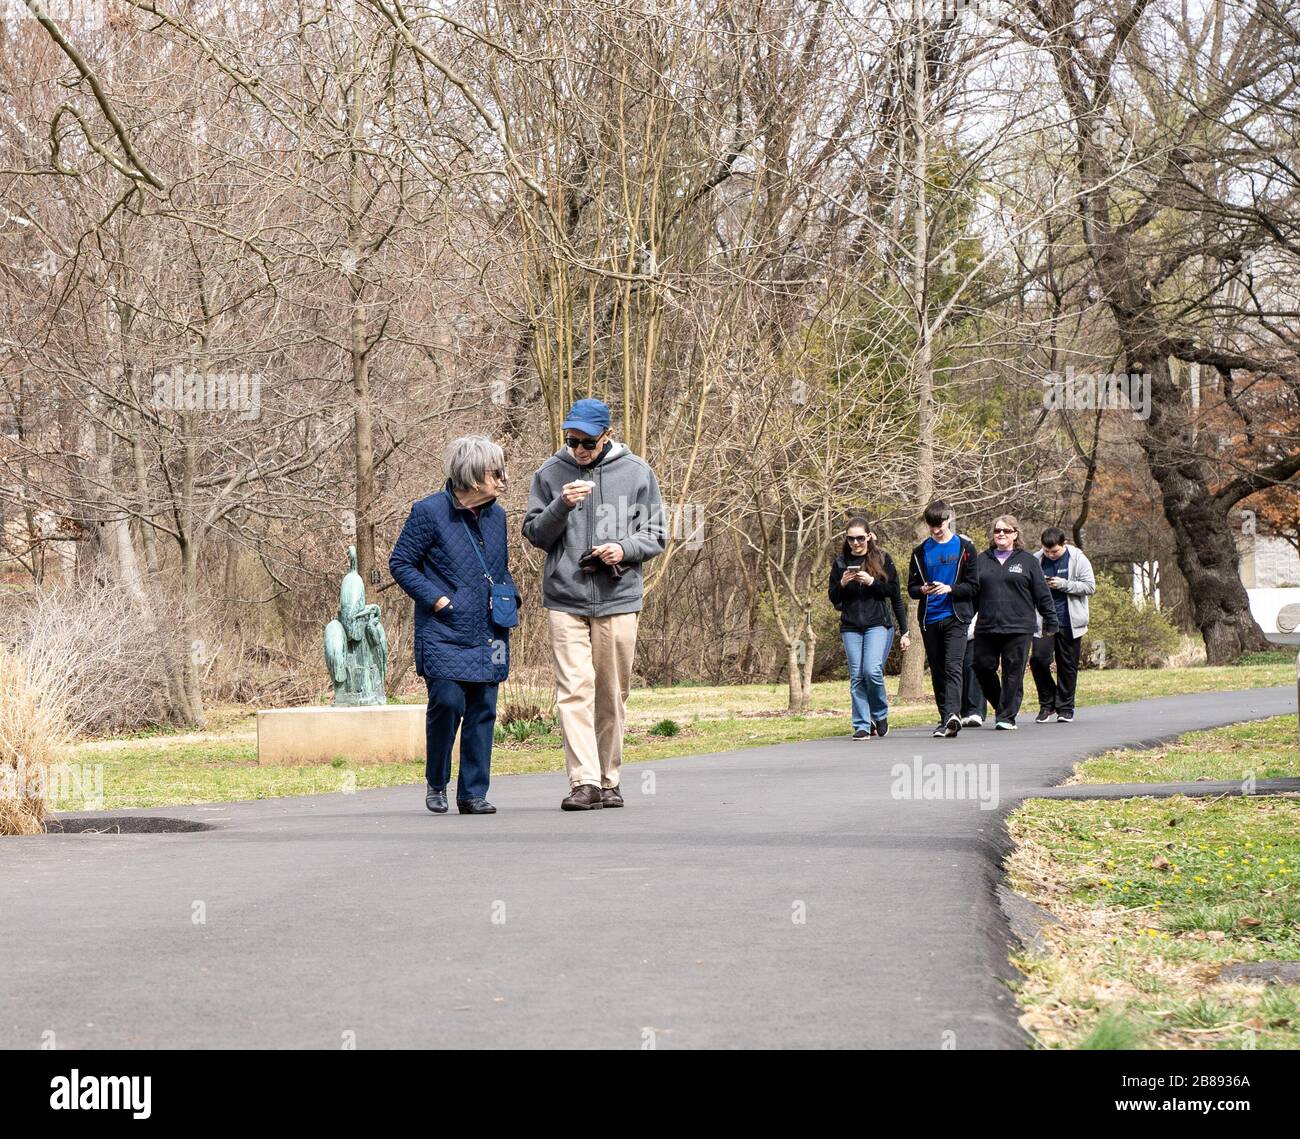 Berks County, Pennsylvania, USA-14 marzo 2020: Coppia senior e gruppi di persone che camminano nel parco. Foto Stock